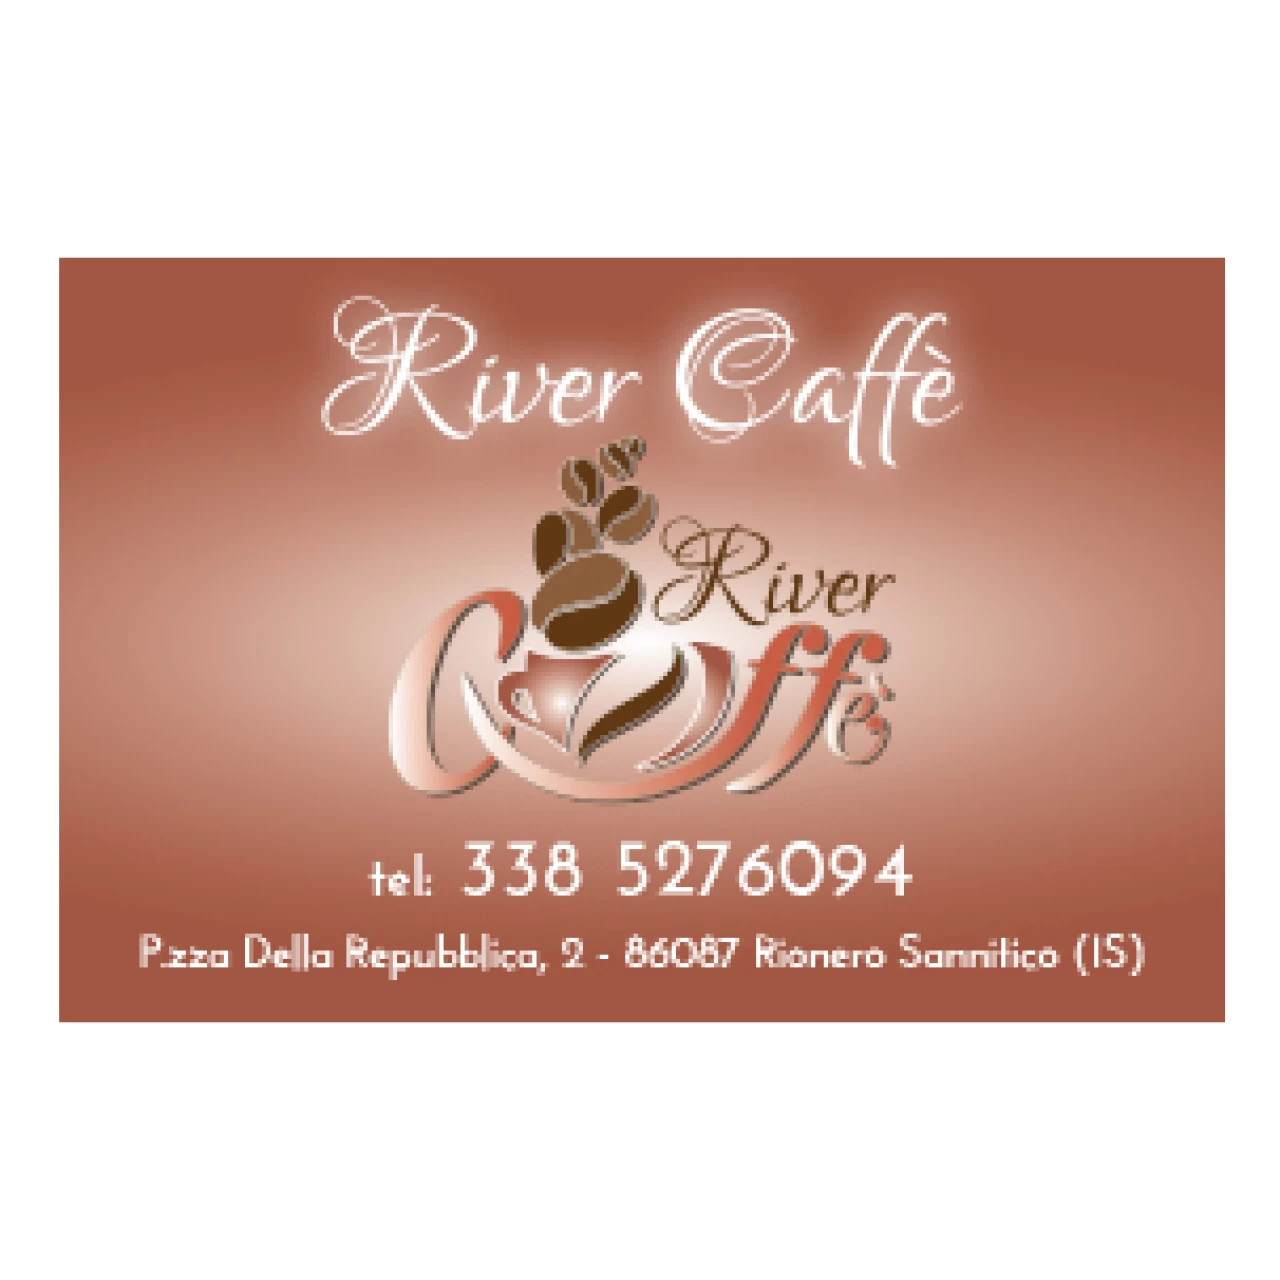 Banner River Caffe' Rionero Sannitico 306 per 306 pixel